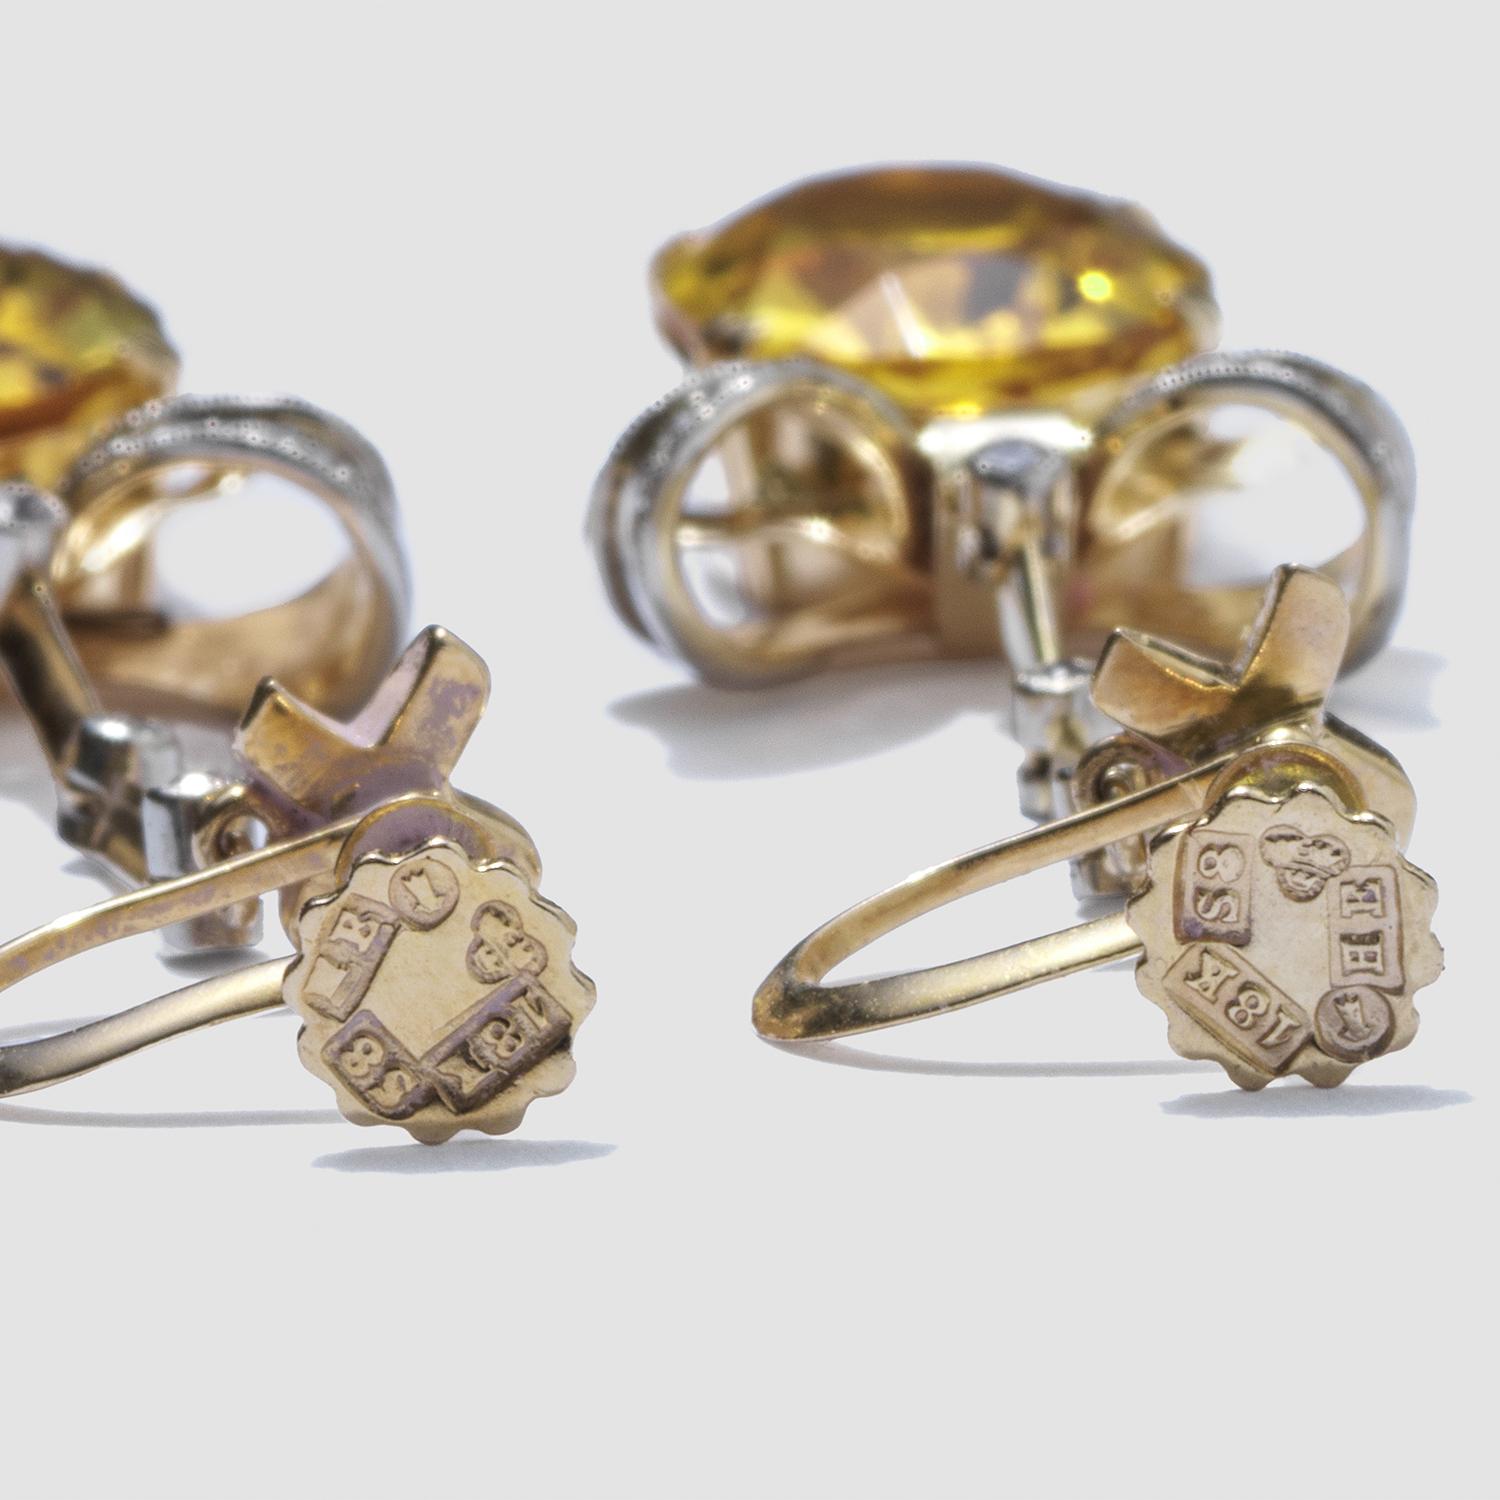 Diese Ohrringe aus 18-karätigem Gold bestehen aus ovalen, facettierten Zitrinen, die mit weißen Steinen akzentuiert sind, die einen Hauch von Funkeln verleihen. Die Zitrinen baumeln an zarten Schleifen und sorgen für einen eleganten Vintage-Look.